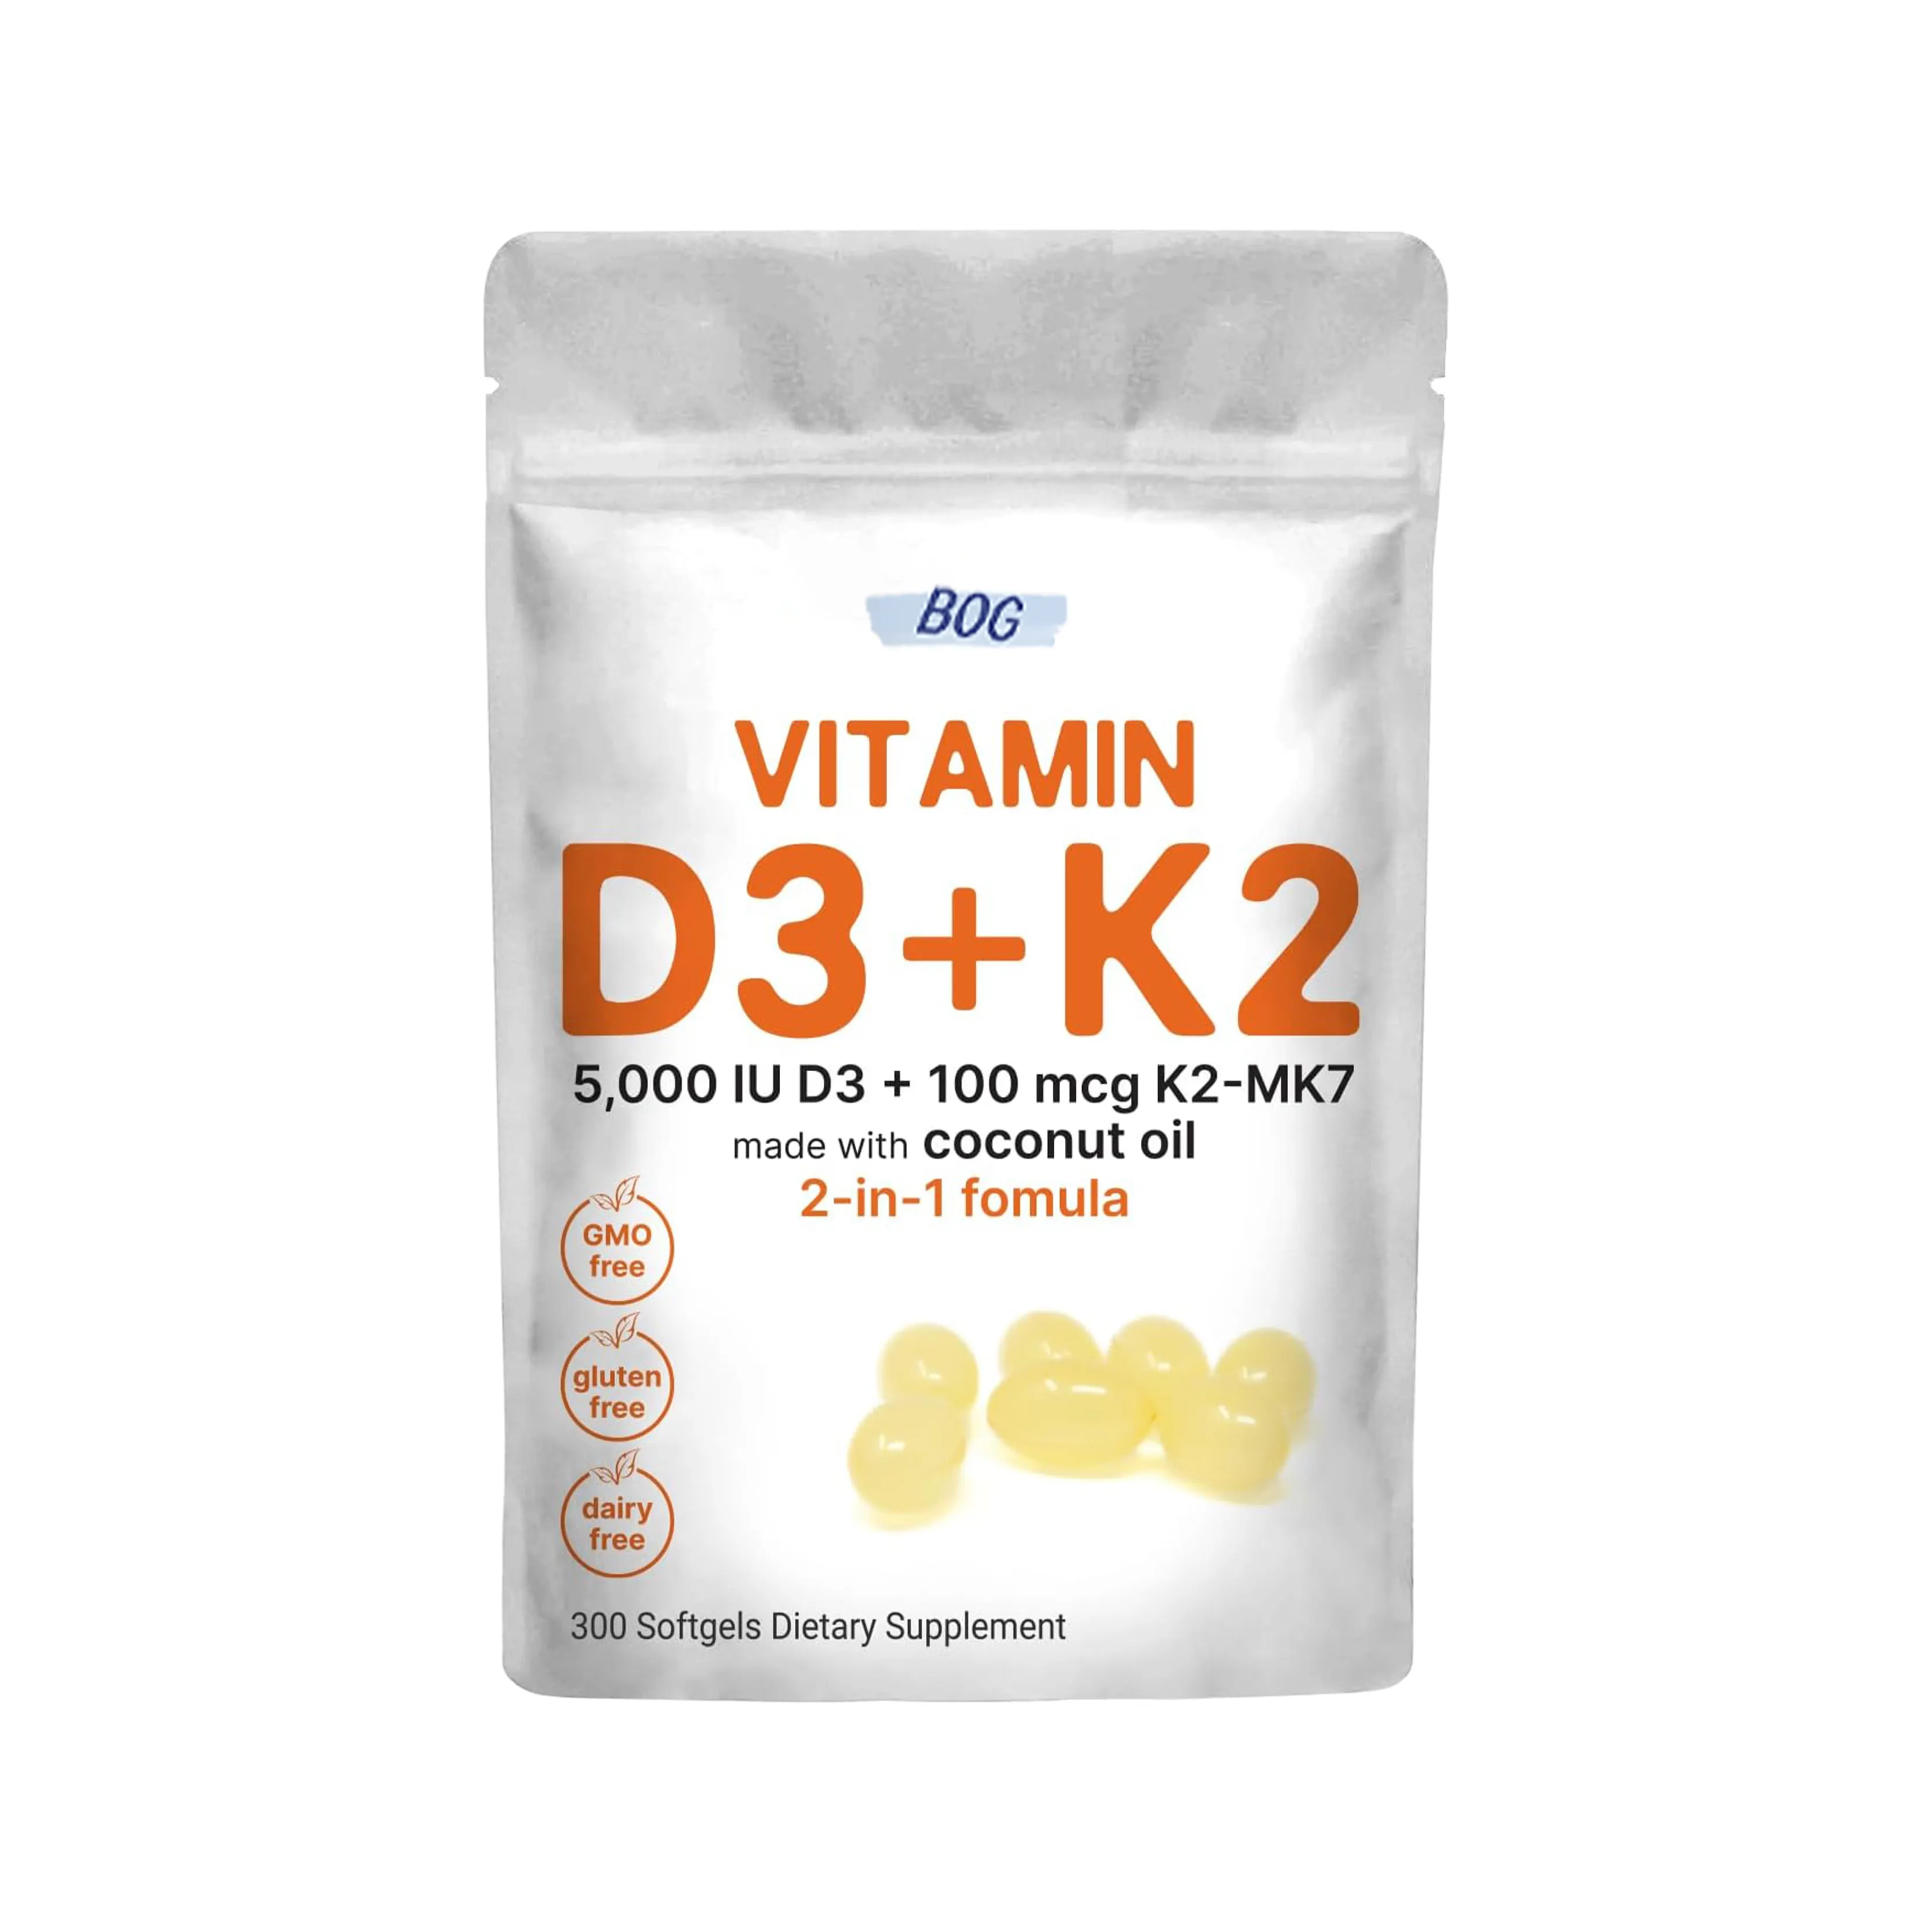 OEM/ODM विटामिन D3 5000 IU K2 सॉफ्ट-जेल्स के साथ K2 MK-7 D3 विटामिन सप्लीमेंट के साथ प्रतिरक्षा, हृदय, जोड़, दांत और हड्डी का समर्थन करता है